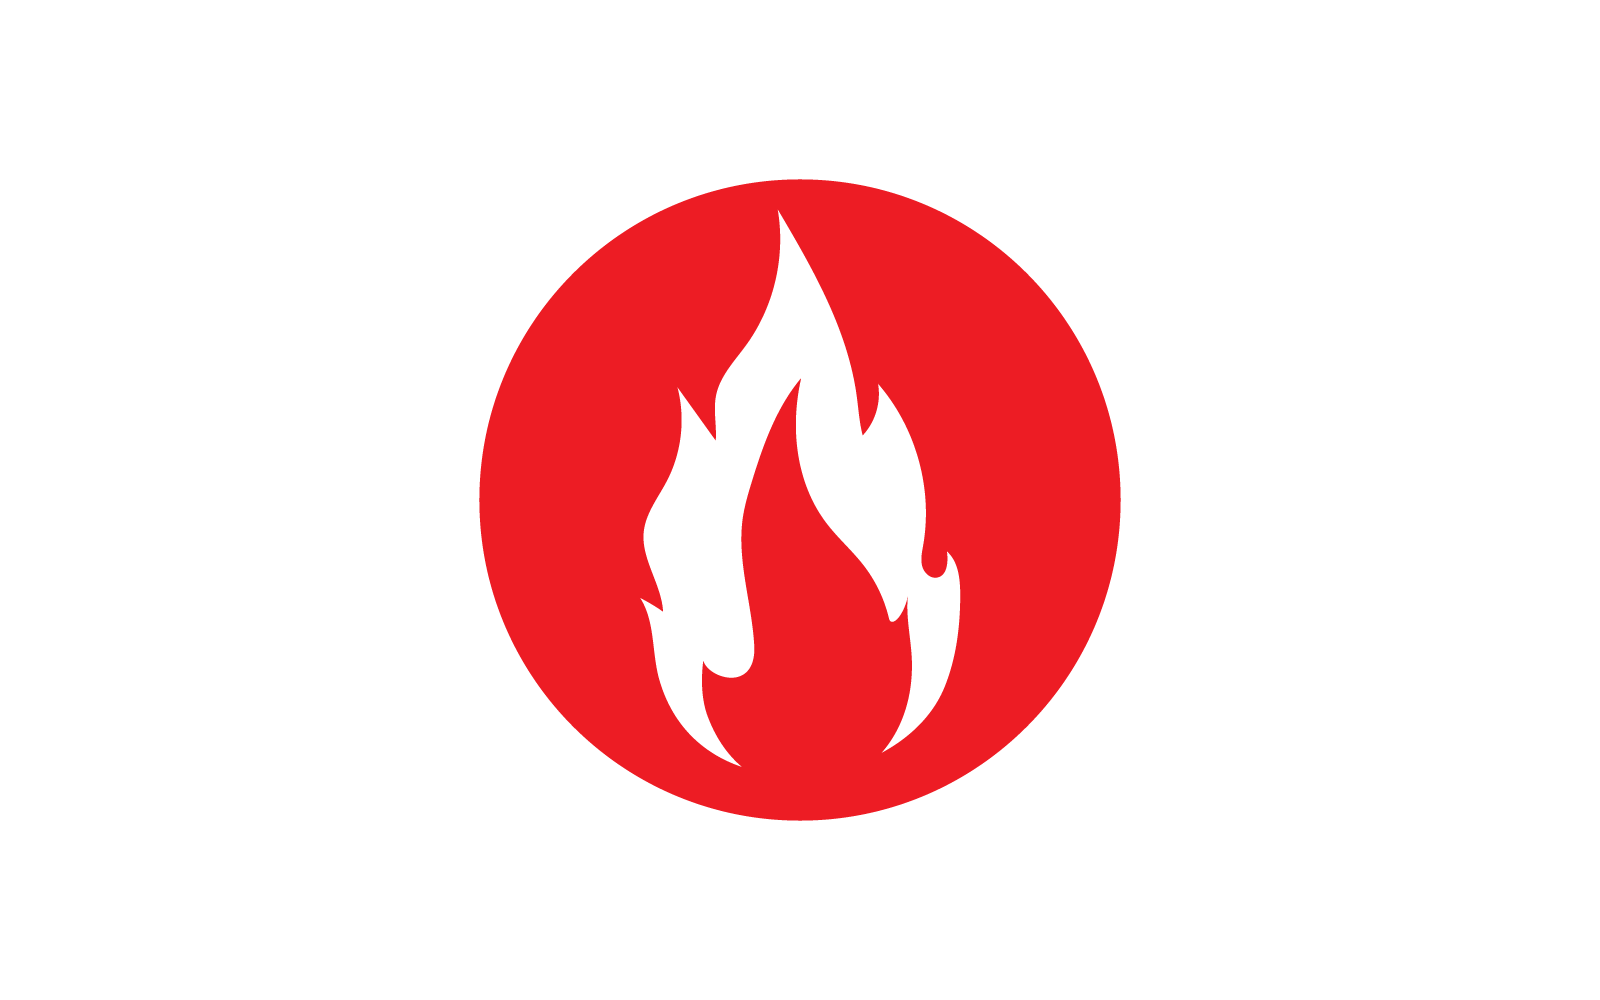 Feuerflamme, Öl-, Gas- und Energielogo, flaches Design-Logo-Konzept